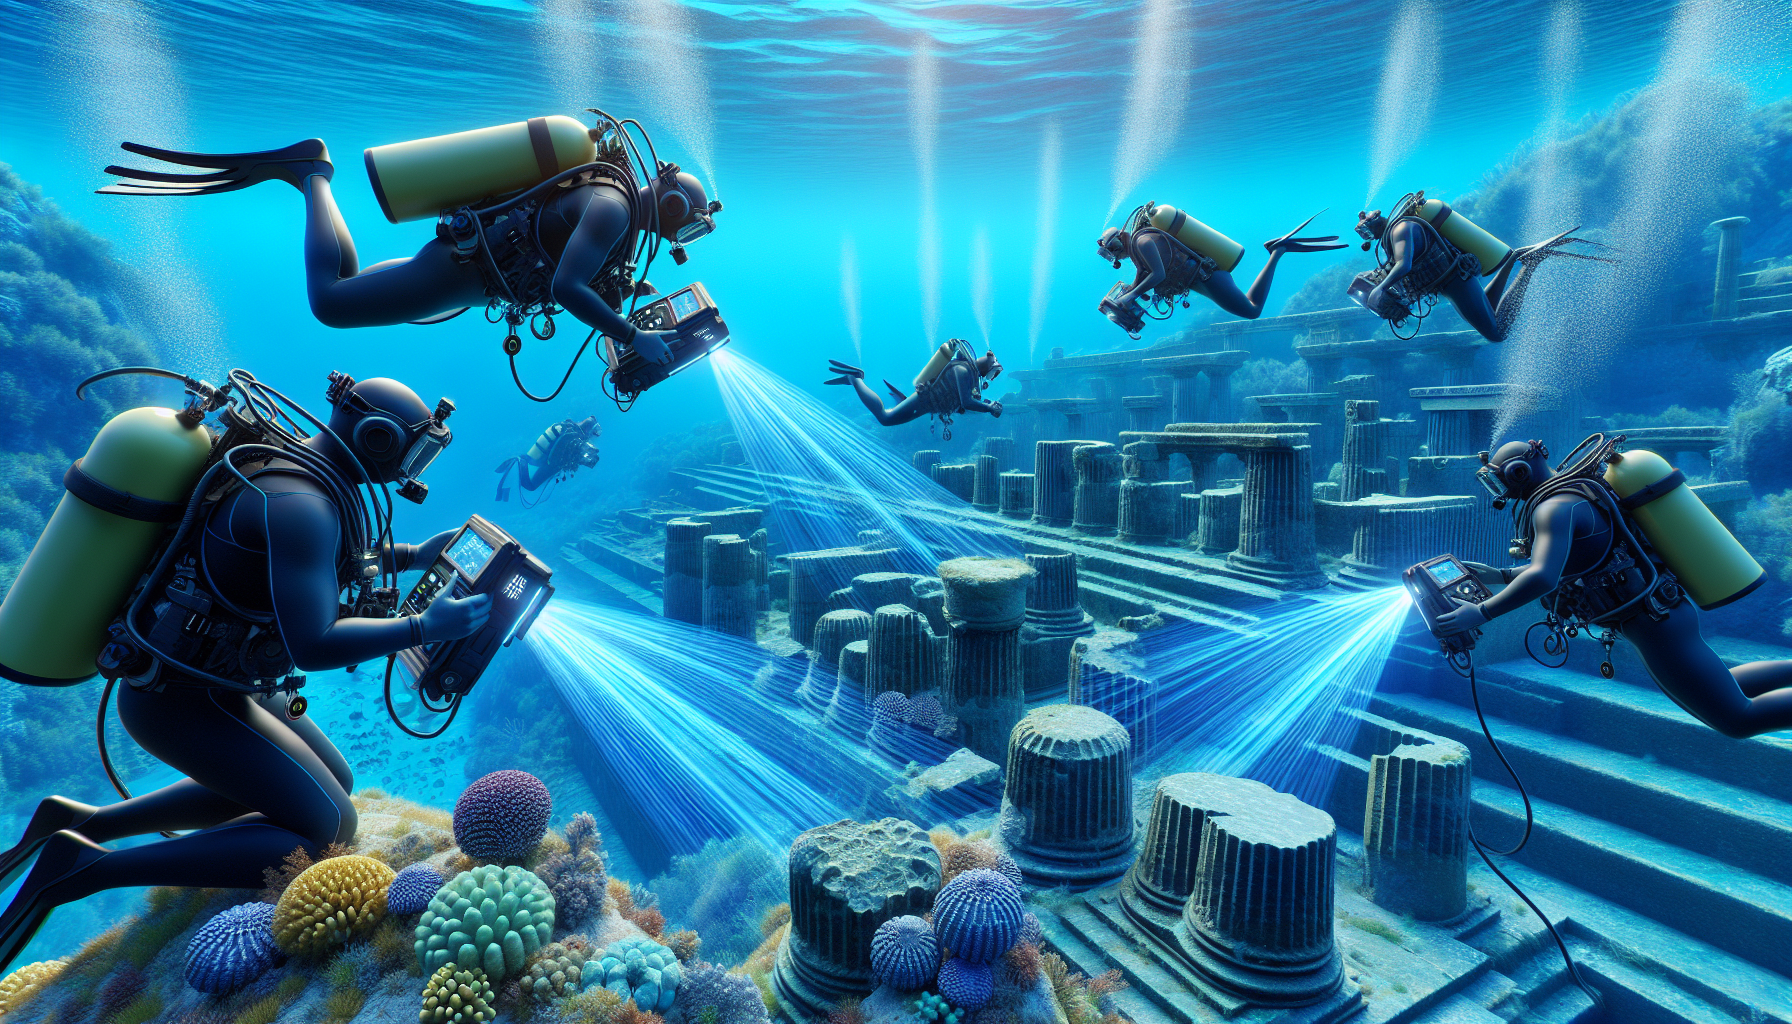 Digital model of Baiae's underwater ruins